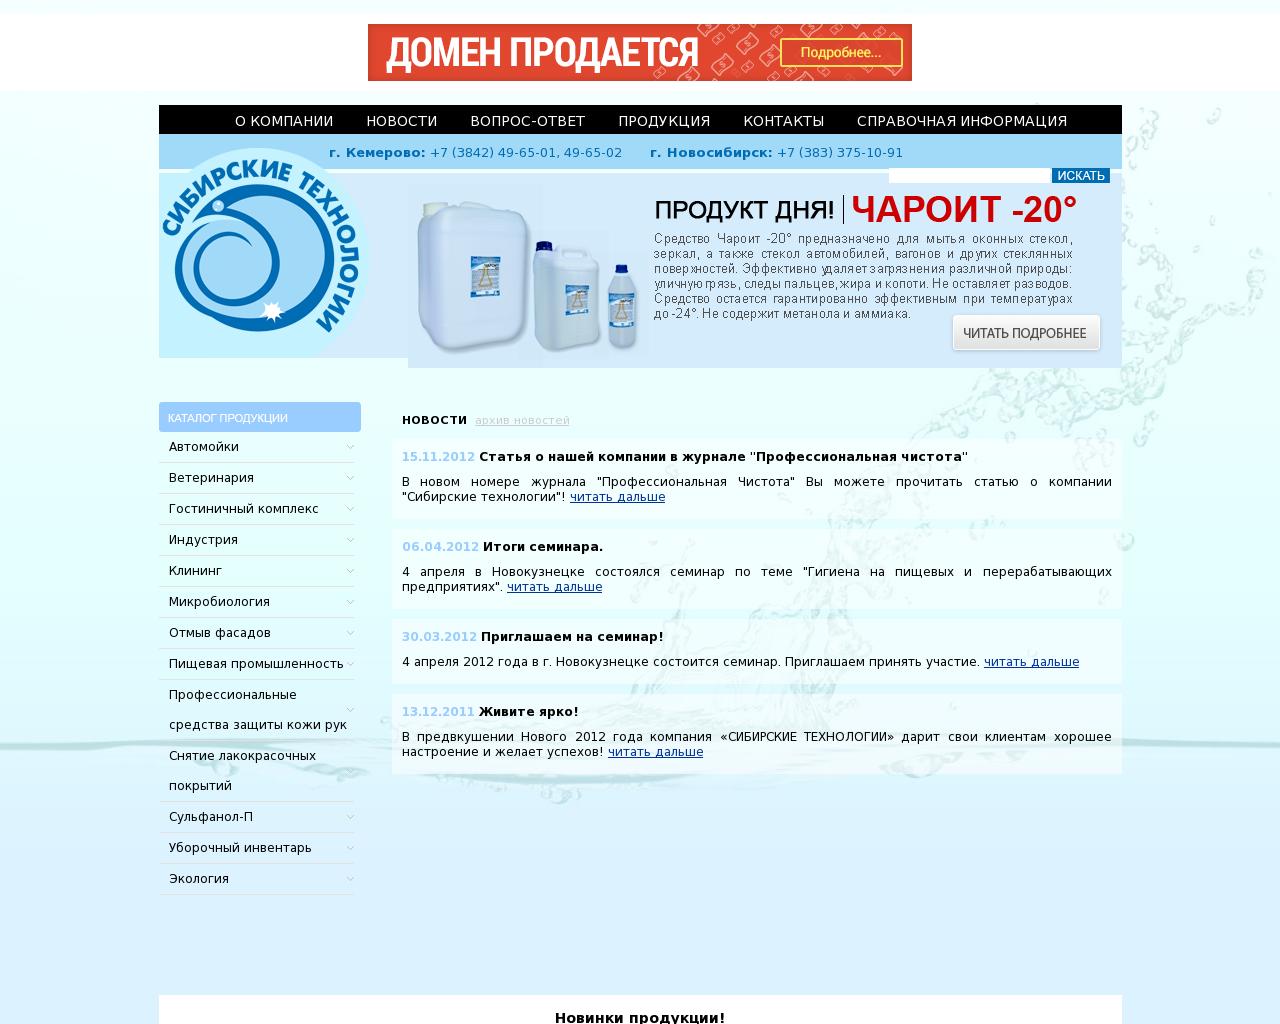 Изображение сайта сибирскиетехнологии.рф в разрешении 1280x1024